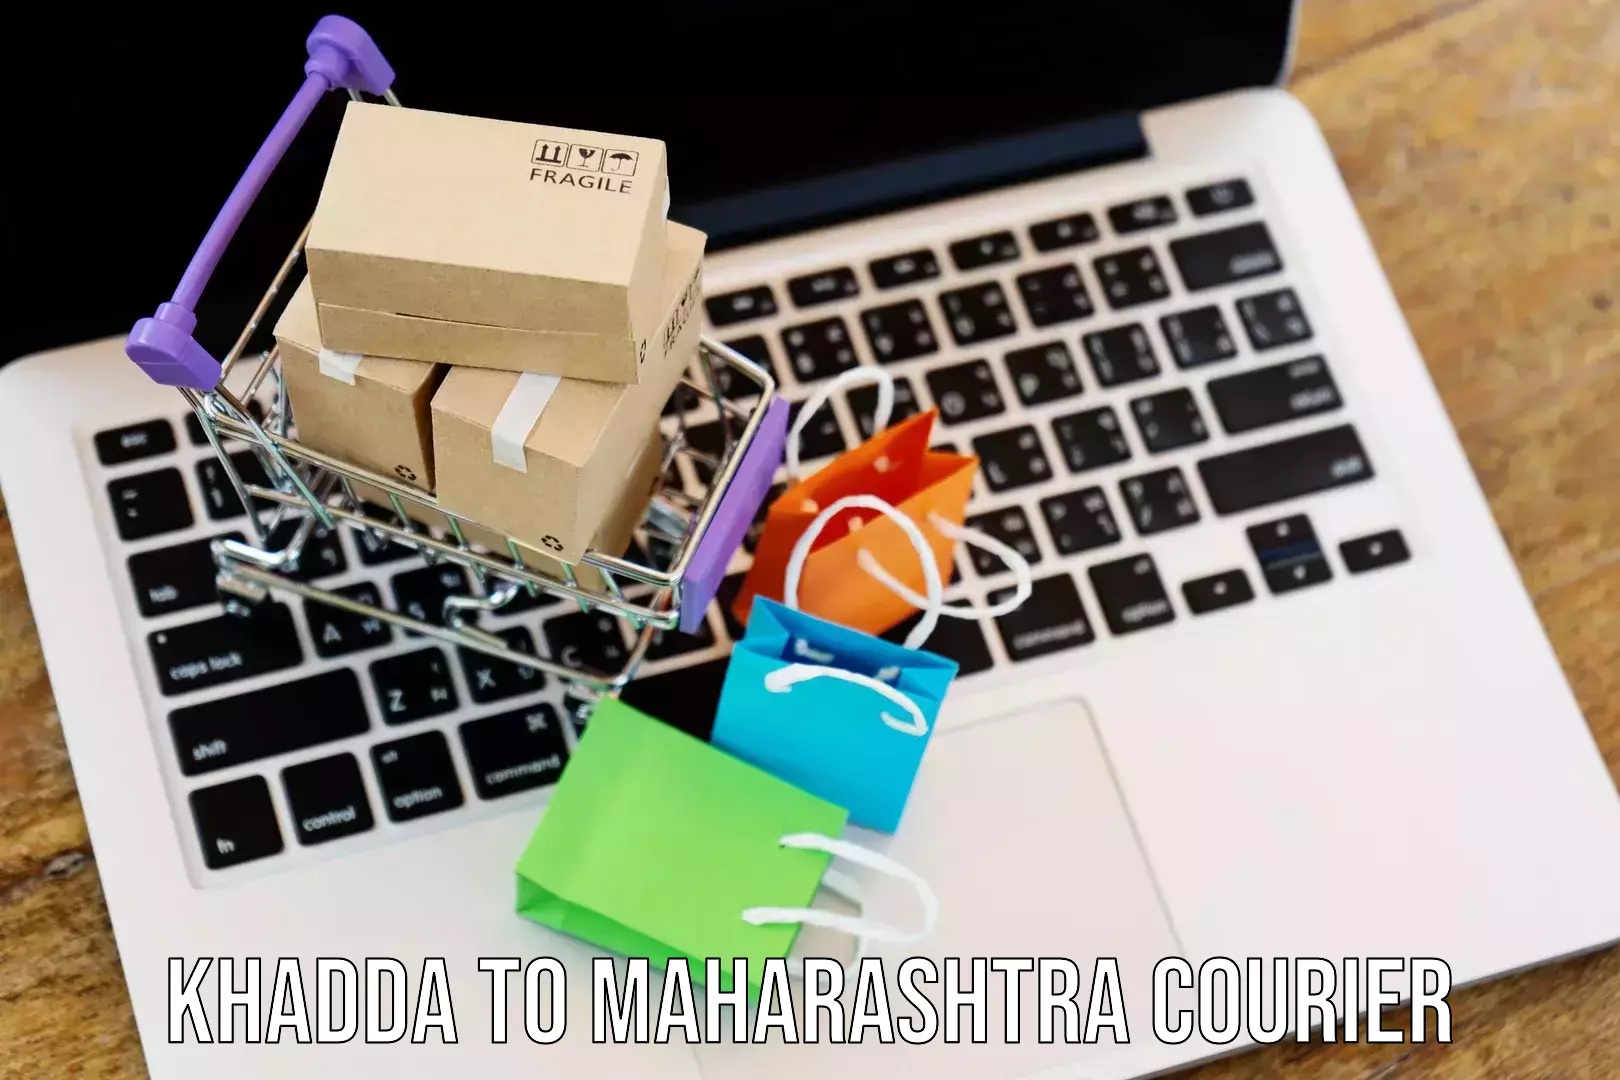 International parcel service Khadda to Maharashtra